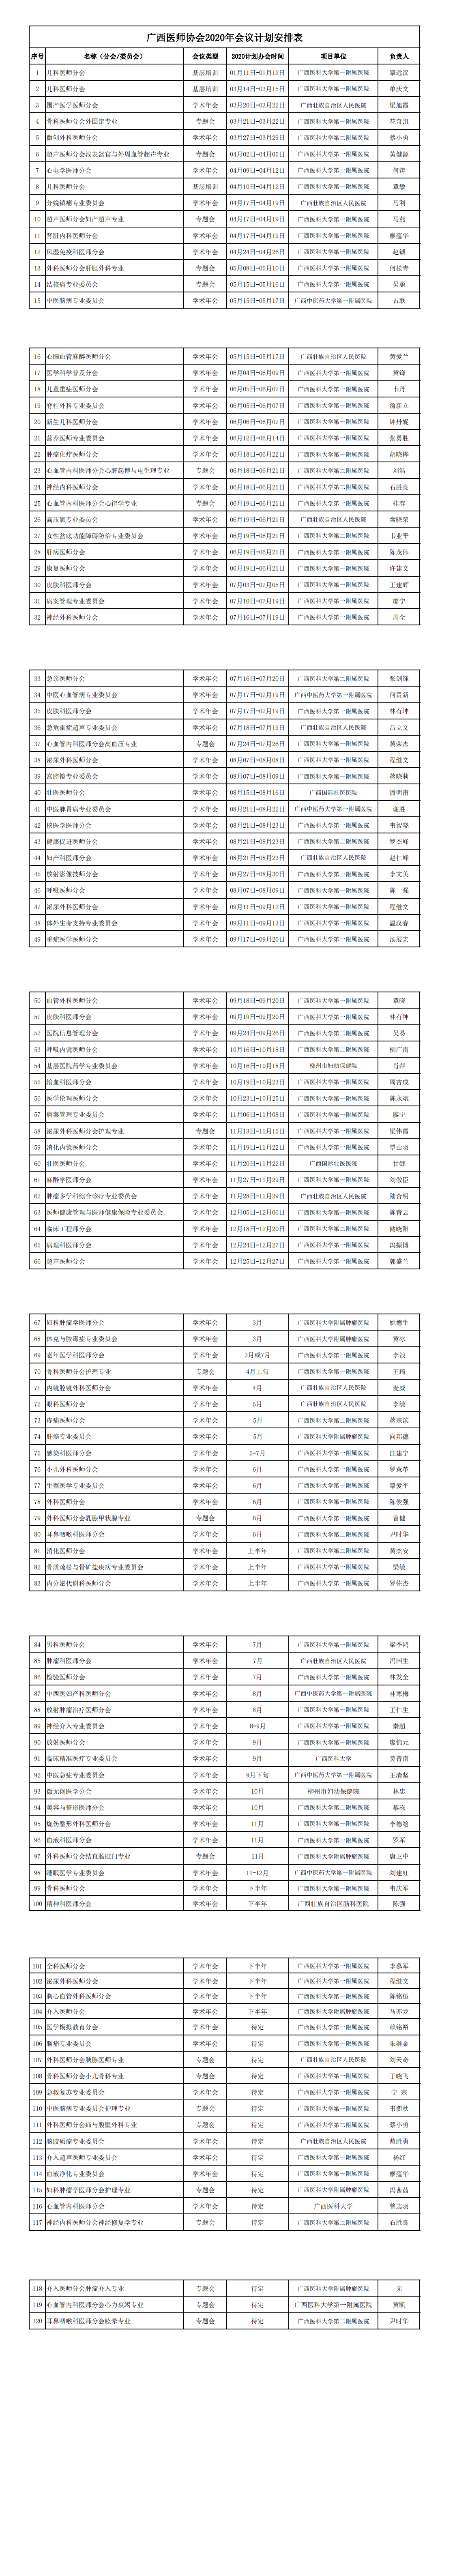 广西医师协会2020年会议计划安排表(1)_00.png